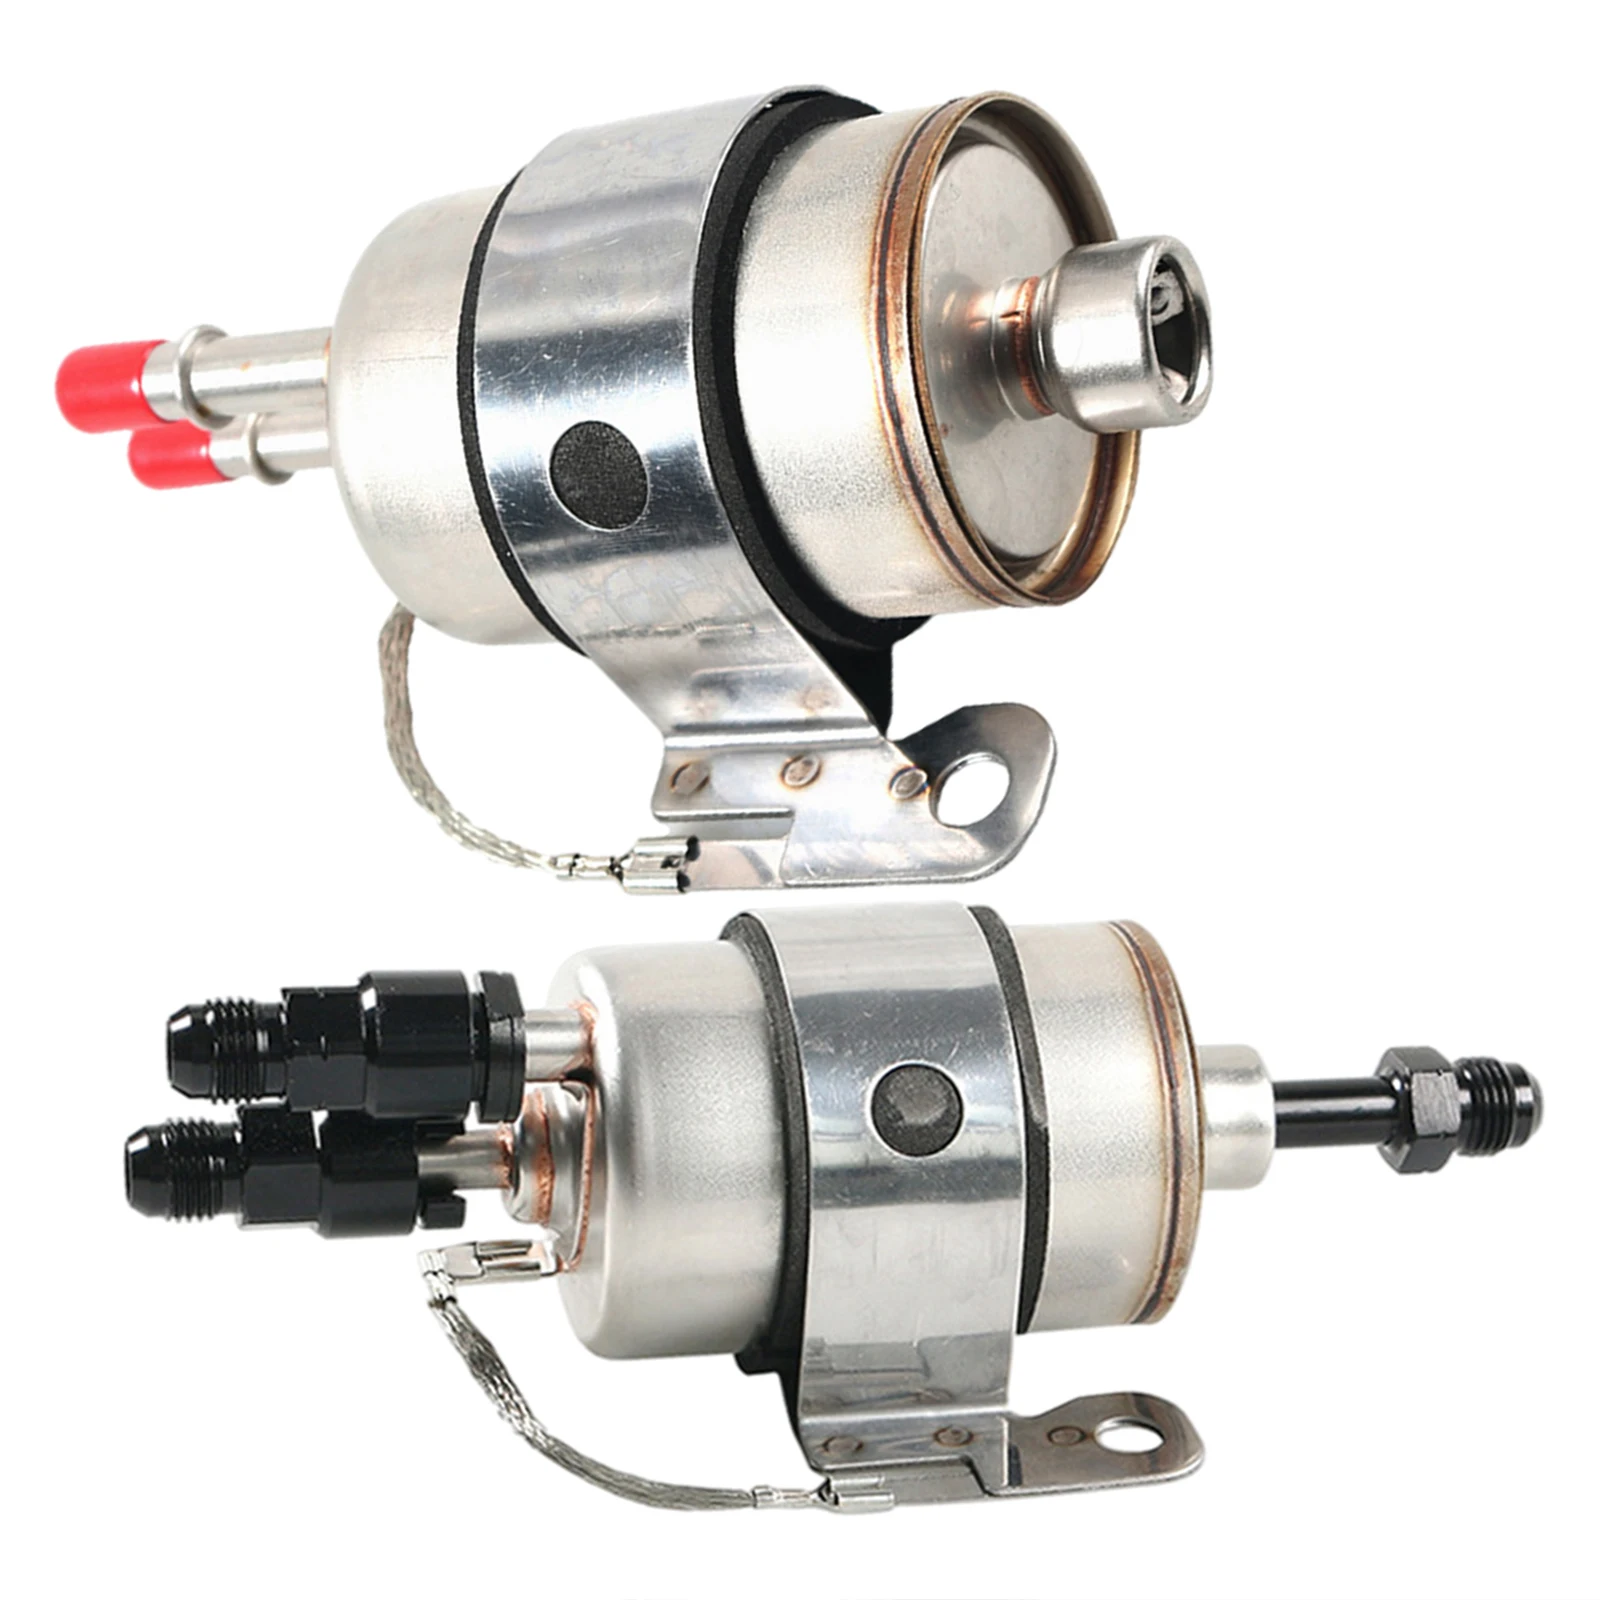 Fuel Filter Regulator Filter Assembly Pressure Regulator Lq4 Fit for LS Conversion Car Engine 